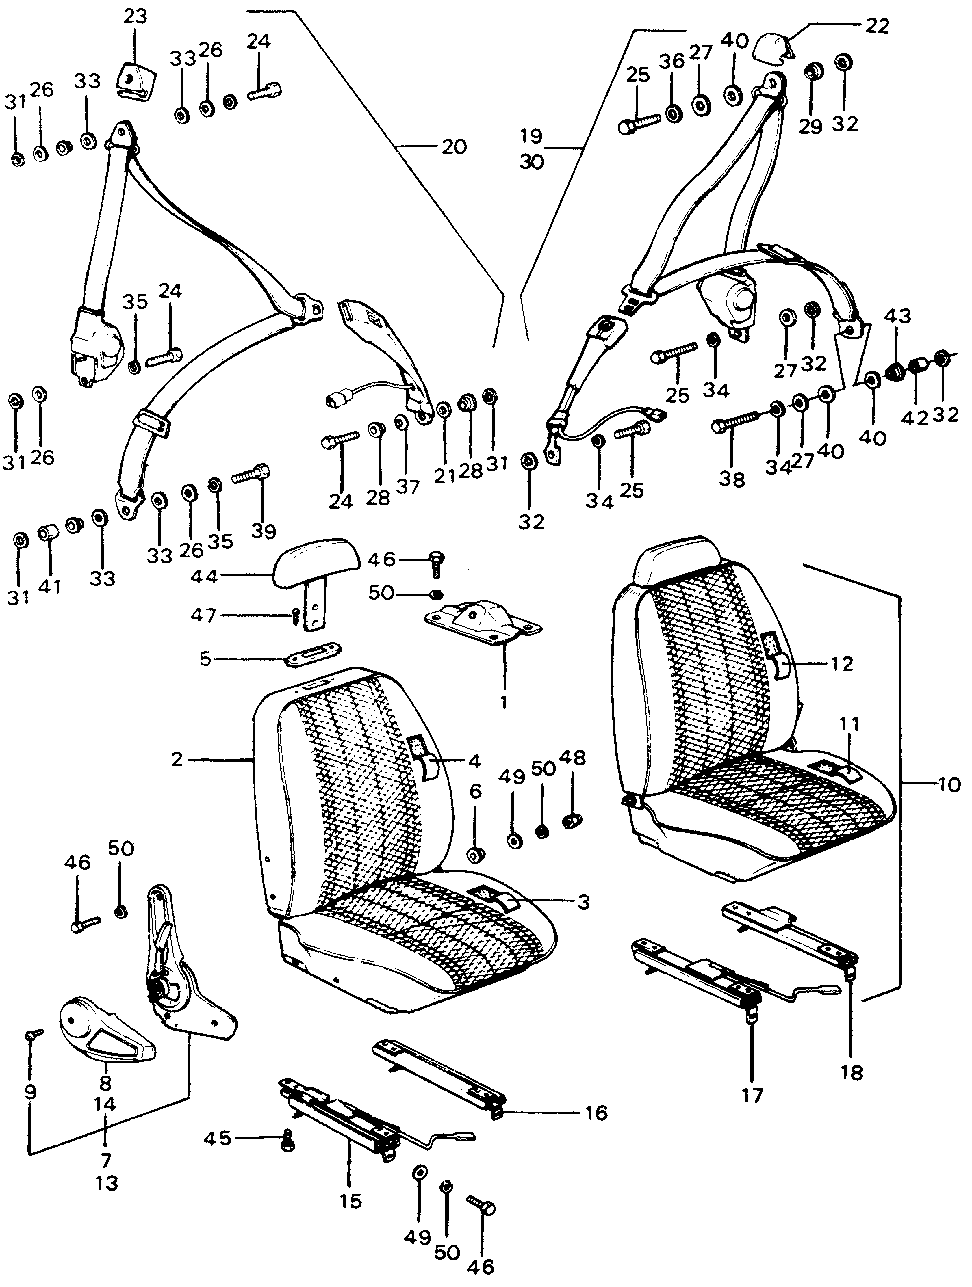 77619-657-003 - BUSH, SEAT BELT SETTING (NIPPON SEIKO)